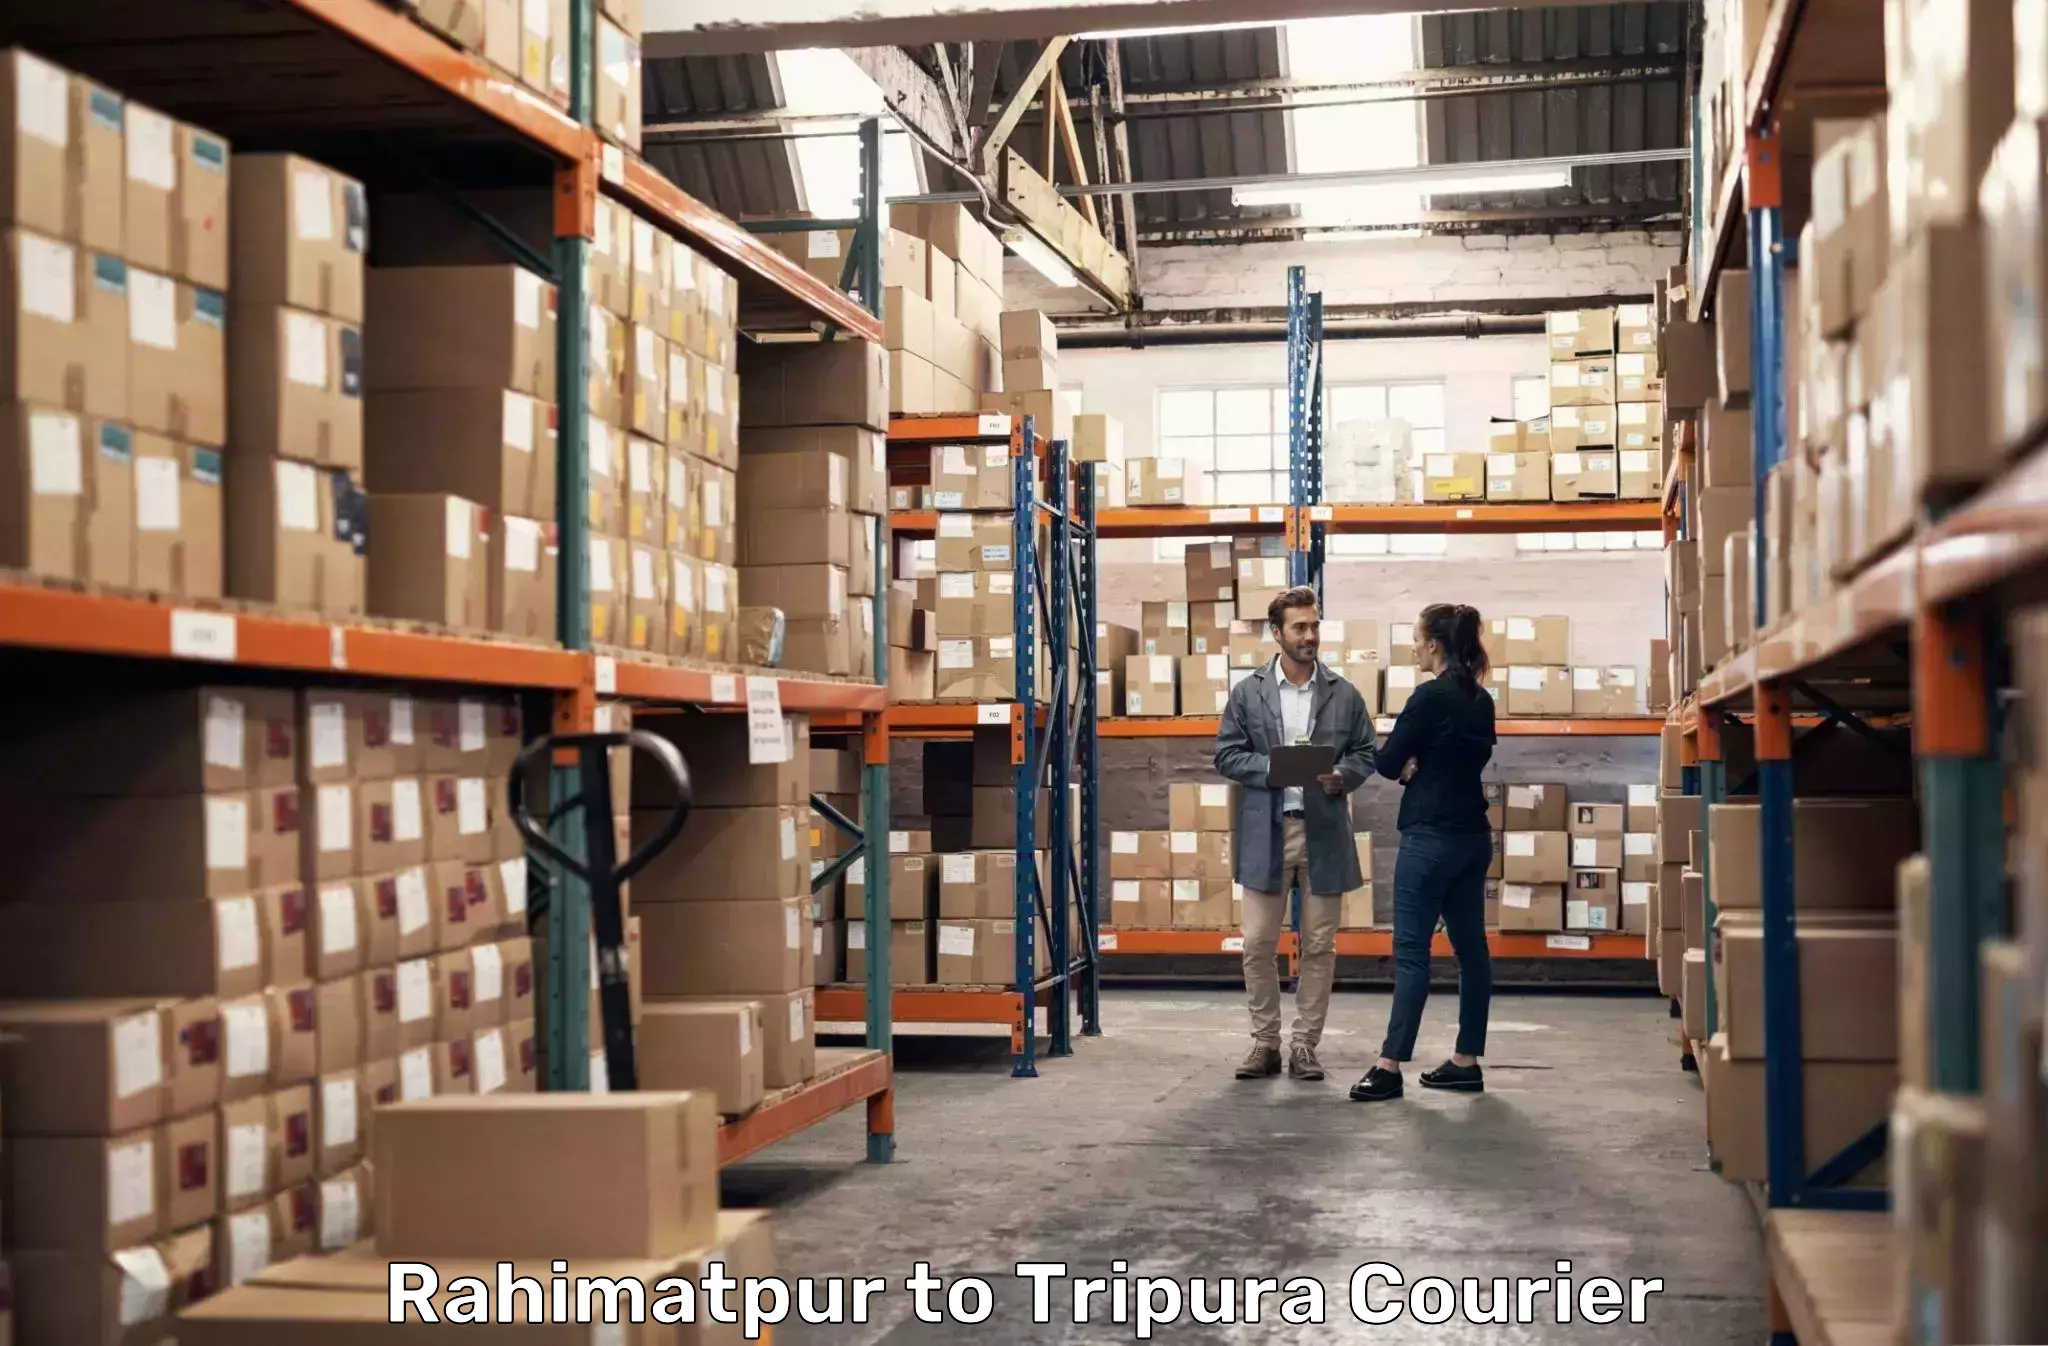 Express courier facilities Rahimatpur to Aambasa